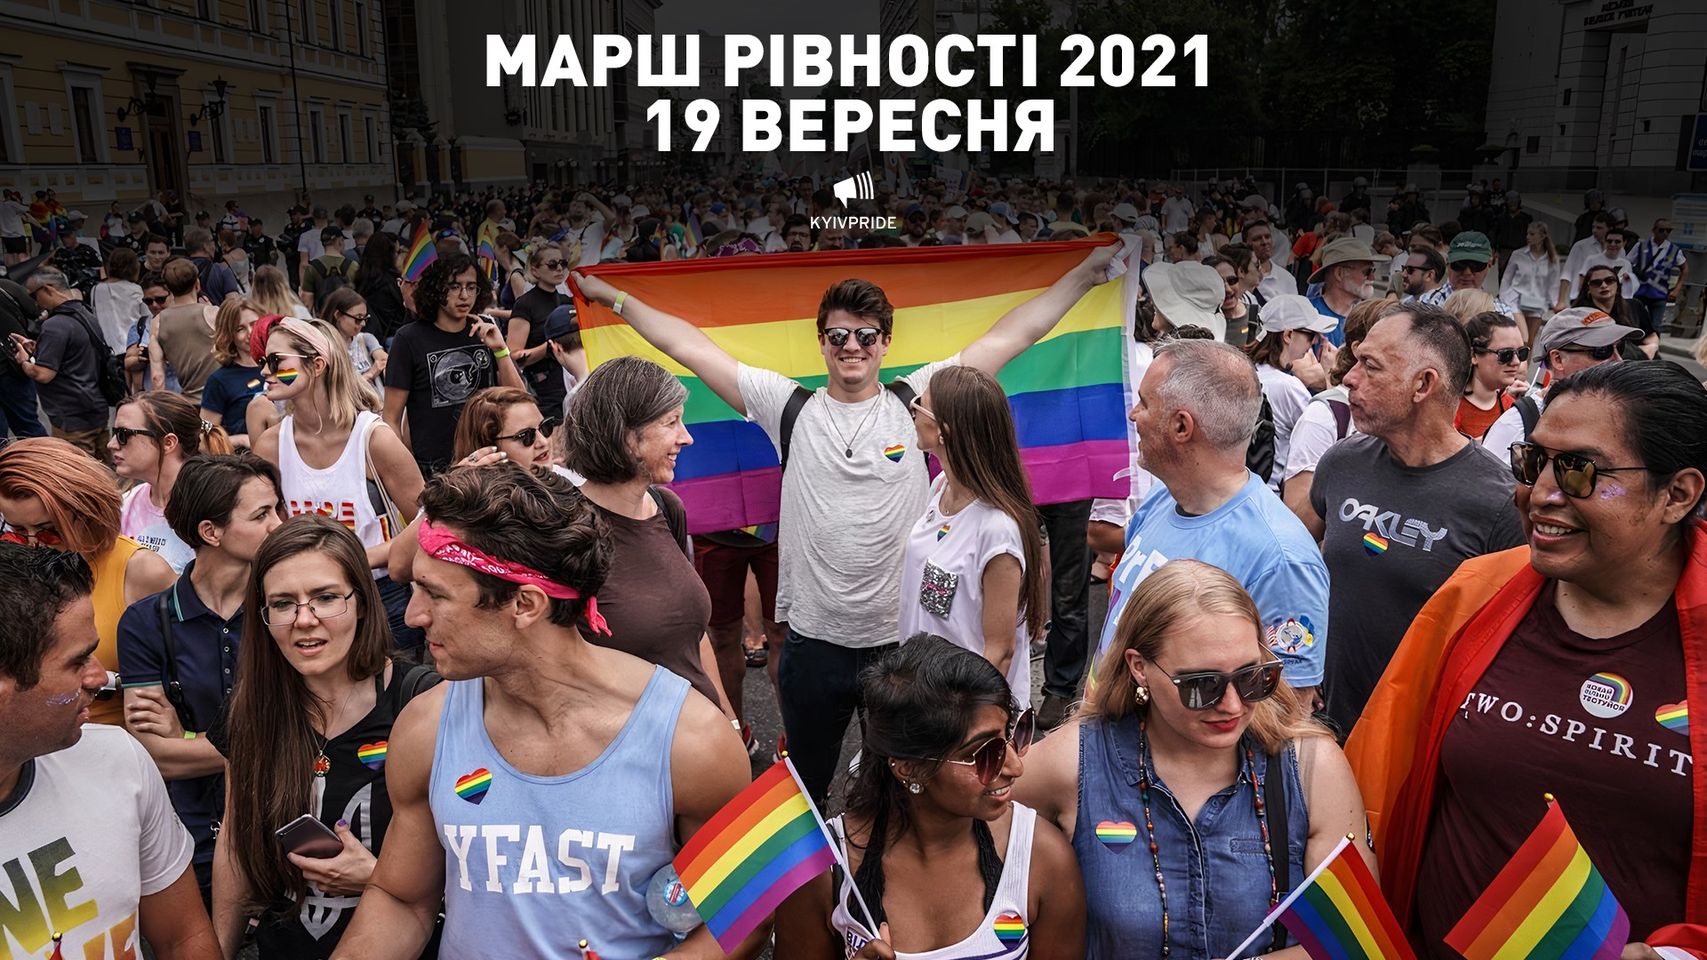 Марш равенства 2021 состоится 19 сентября в центре Киева под девизом 